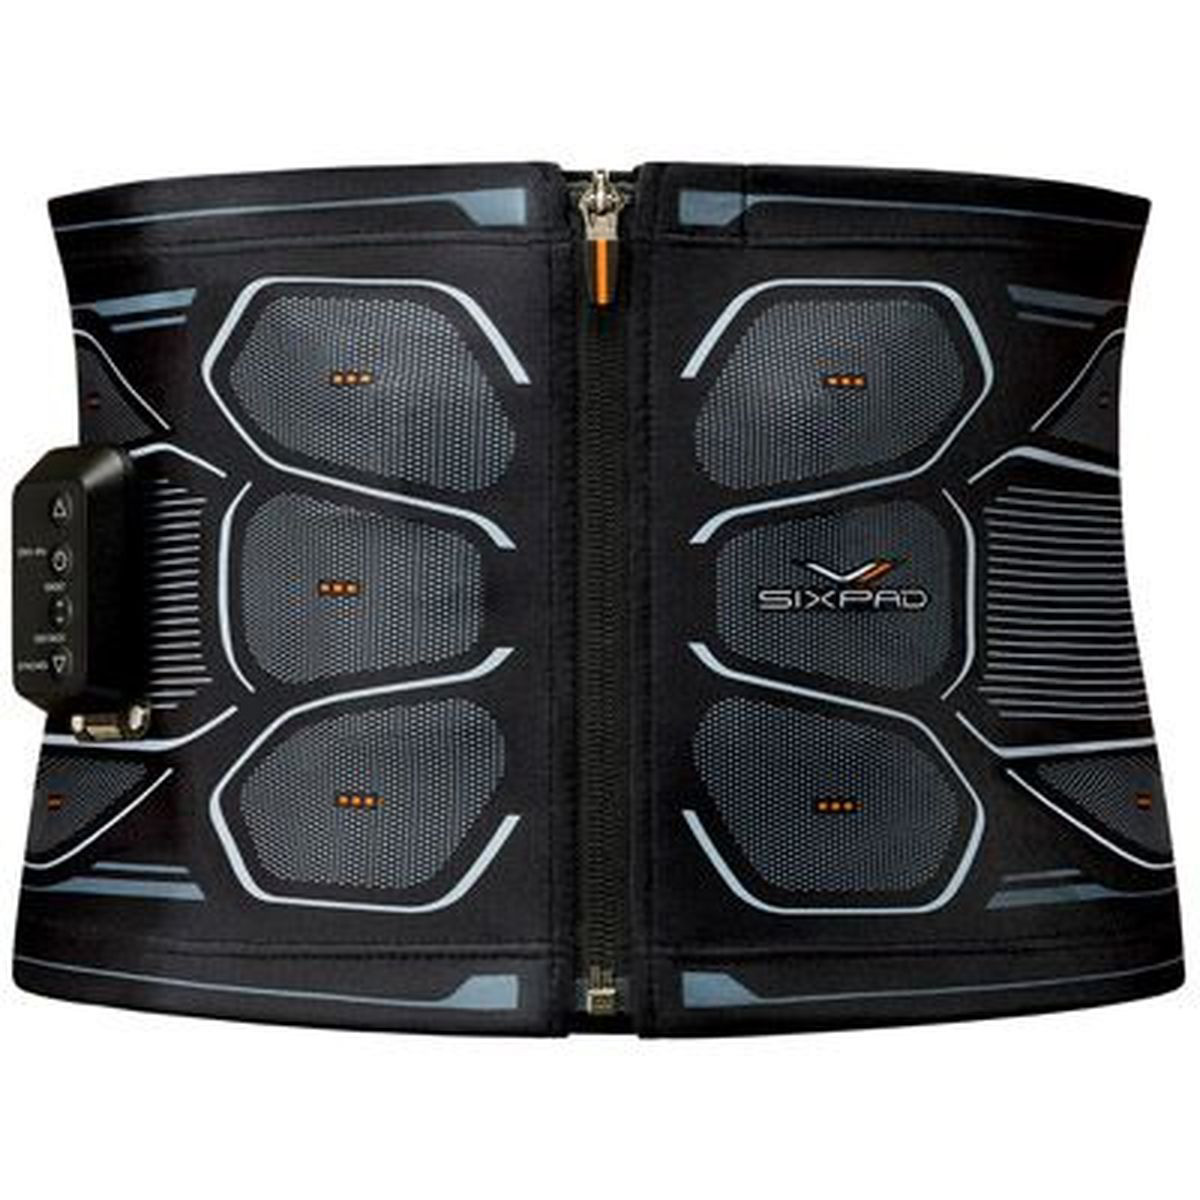 SIXPAD Powersuit Core Belt シックスパッド パワースーツ コアベルト Mサイズ